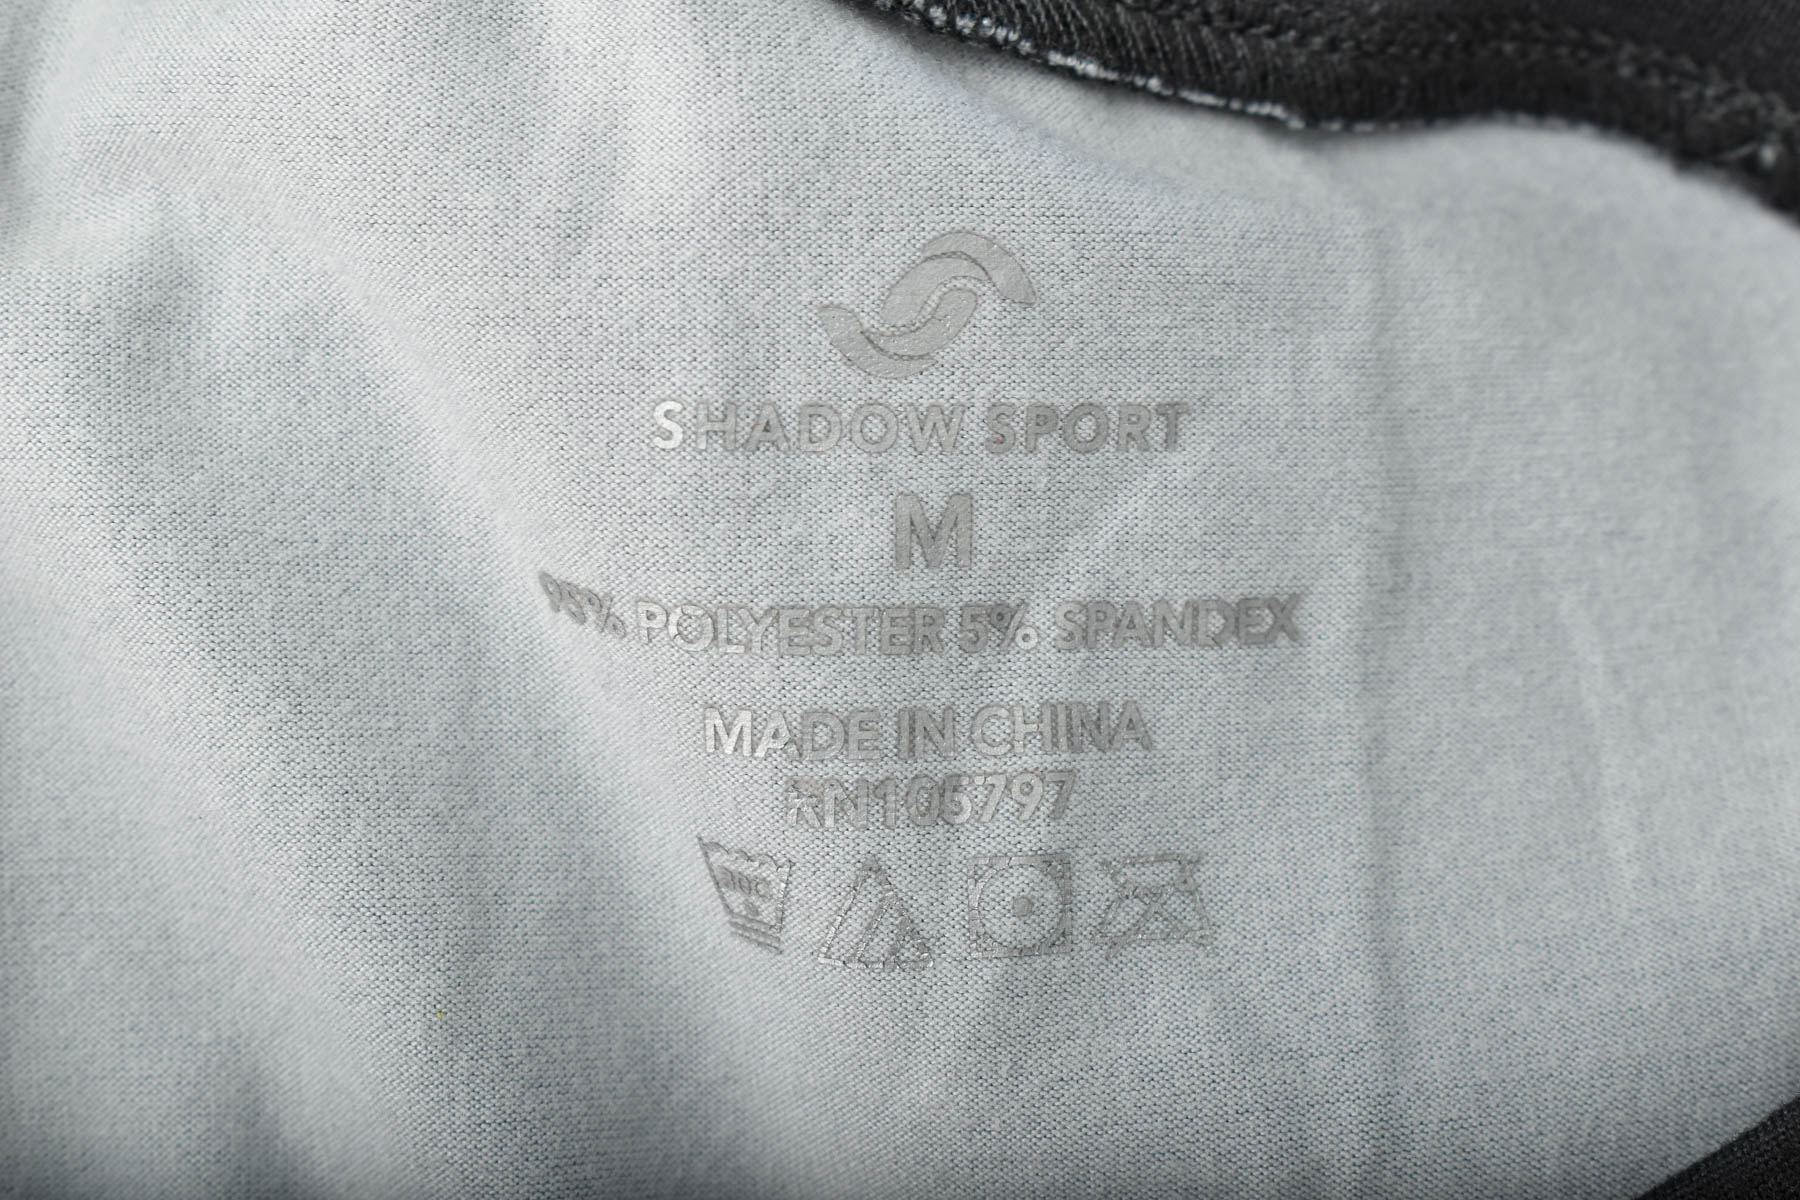 Дамска тениска - SHADOW SPORT - 2